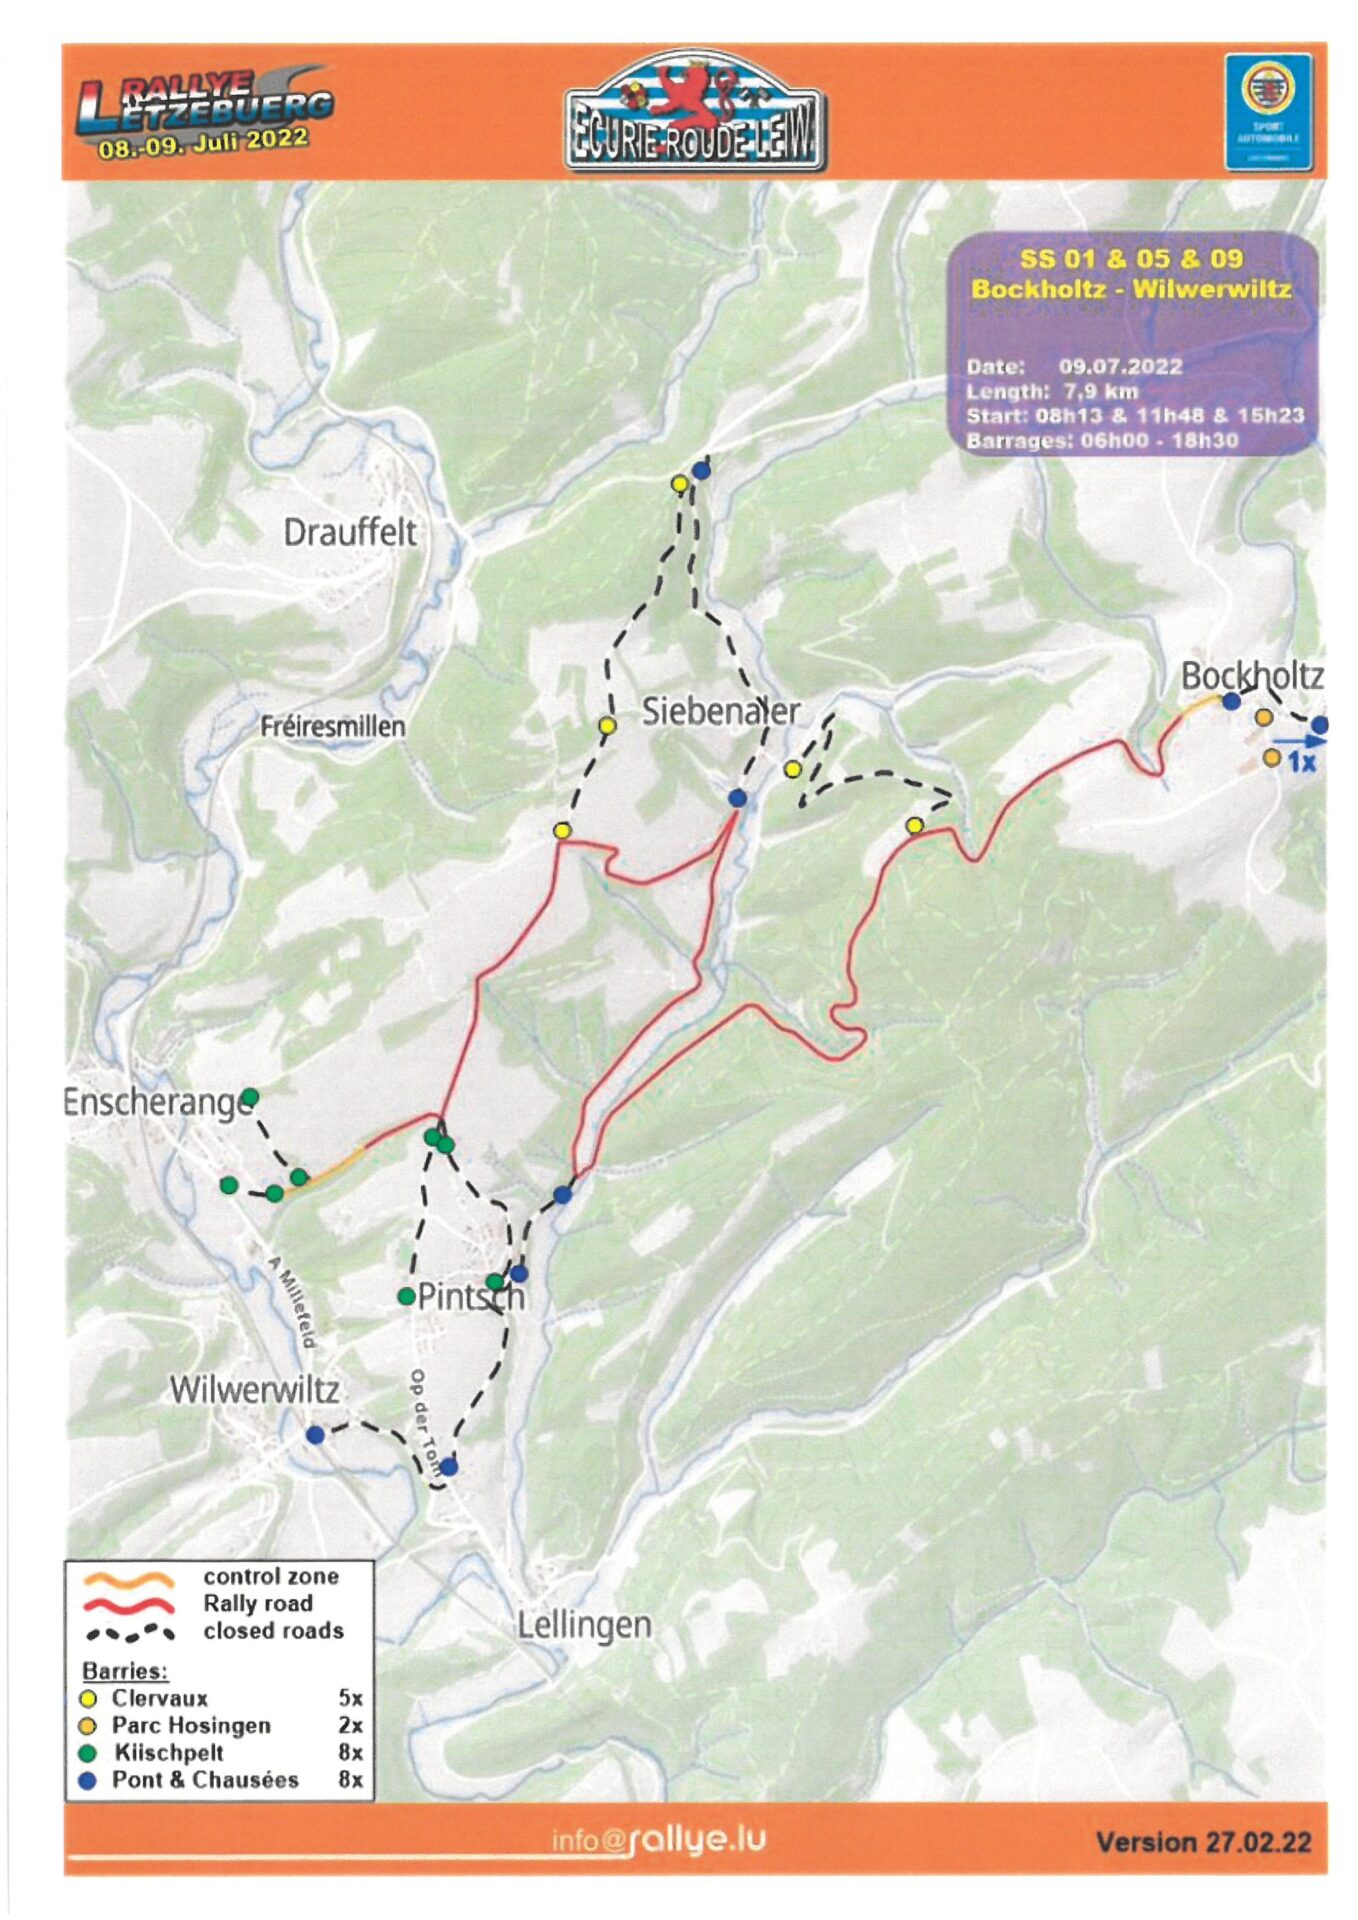 Rallye Luxembourg - Plans - 9 juillet 2022_2